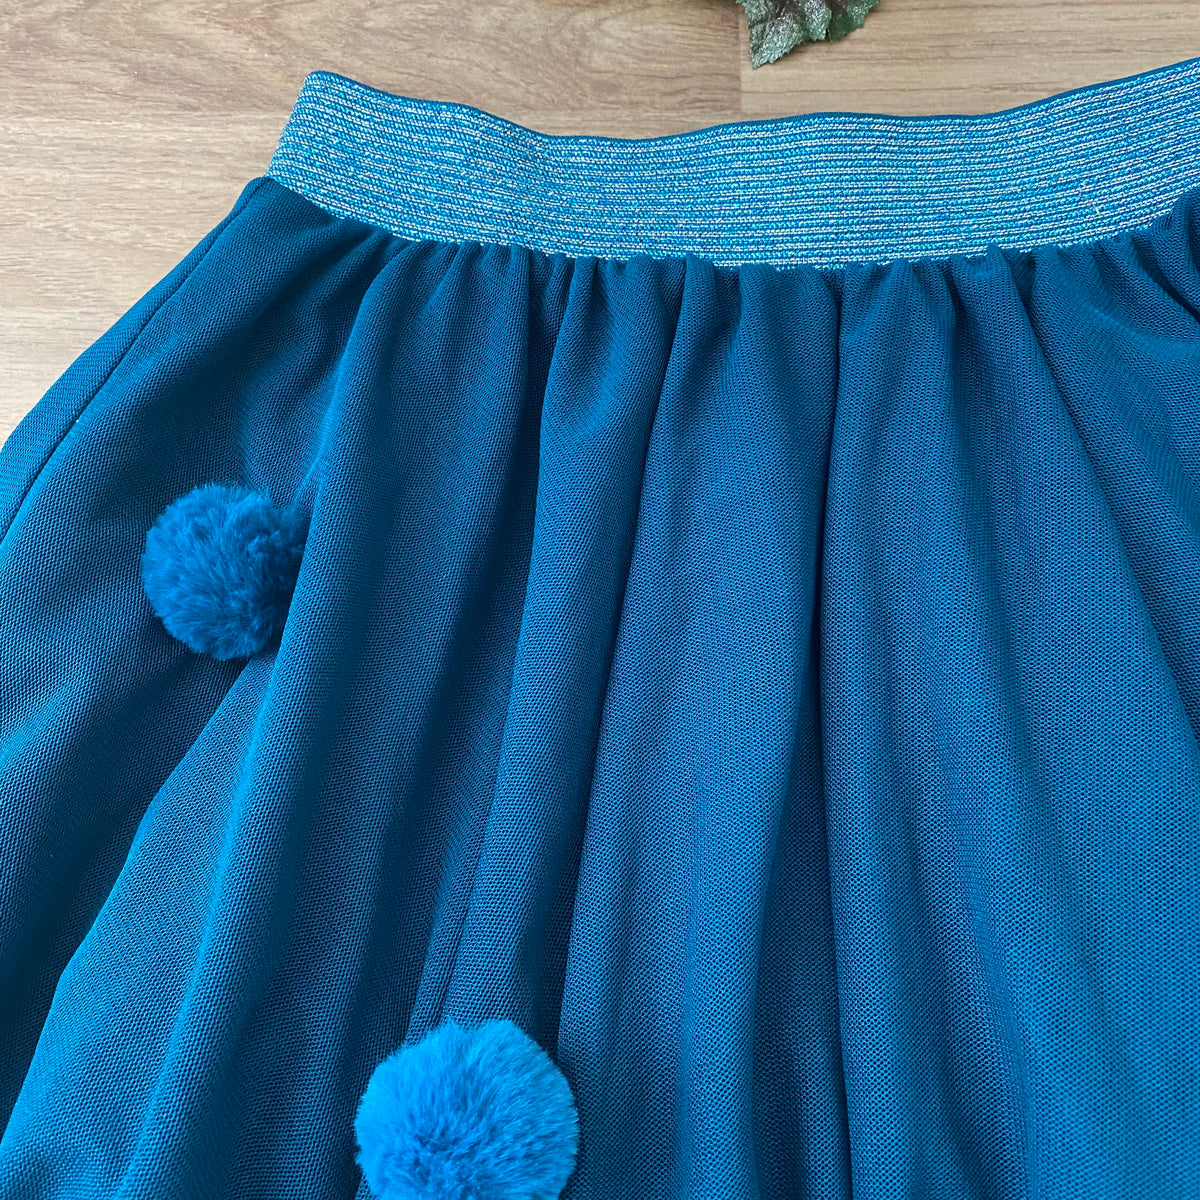 Skirt (Girls Size 9-10)